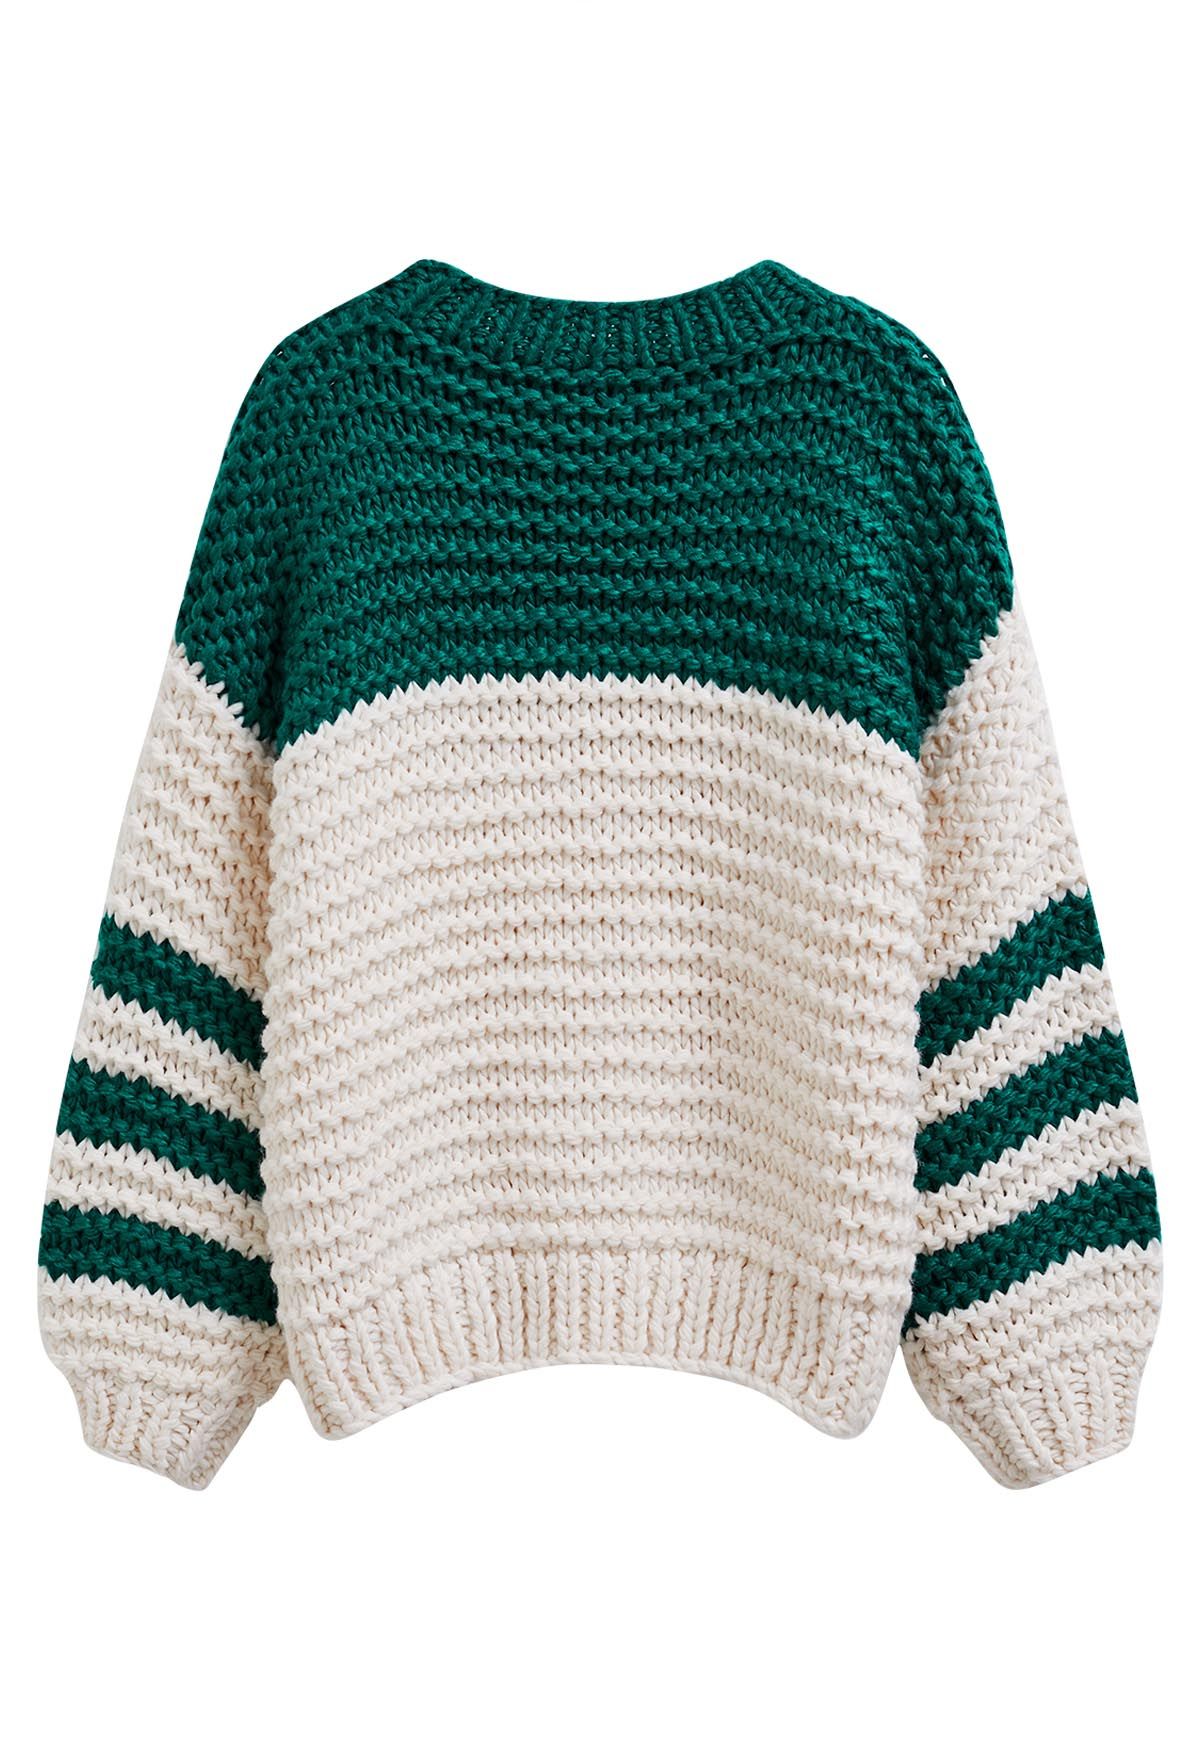 Suéter tejido a mano grueso con mangas a rayas de dos tonos en verde